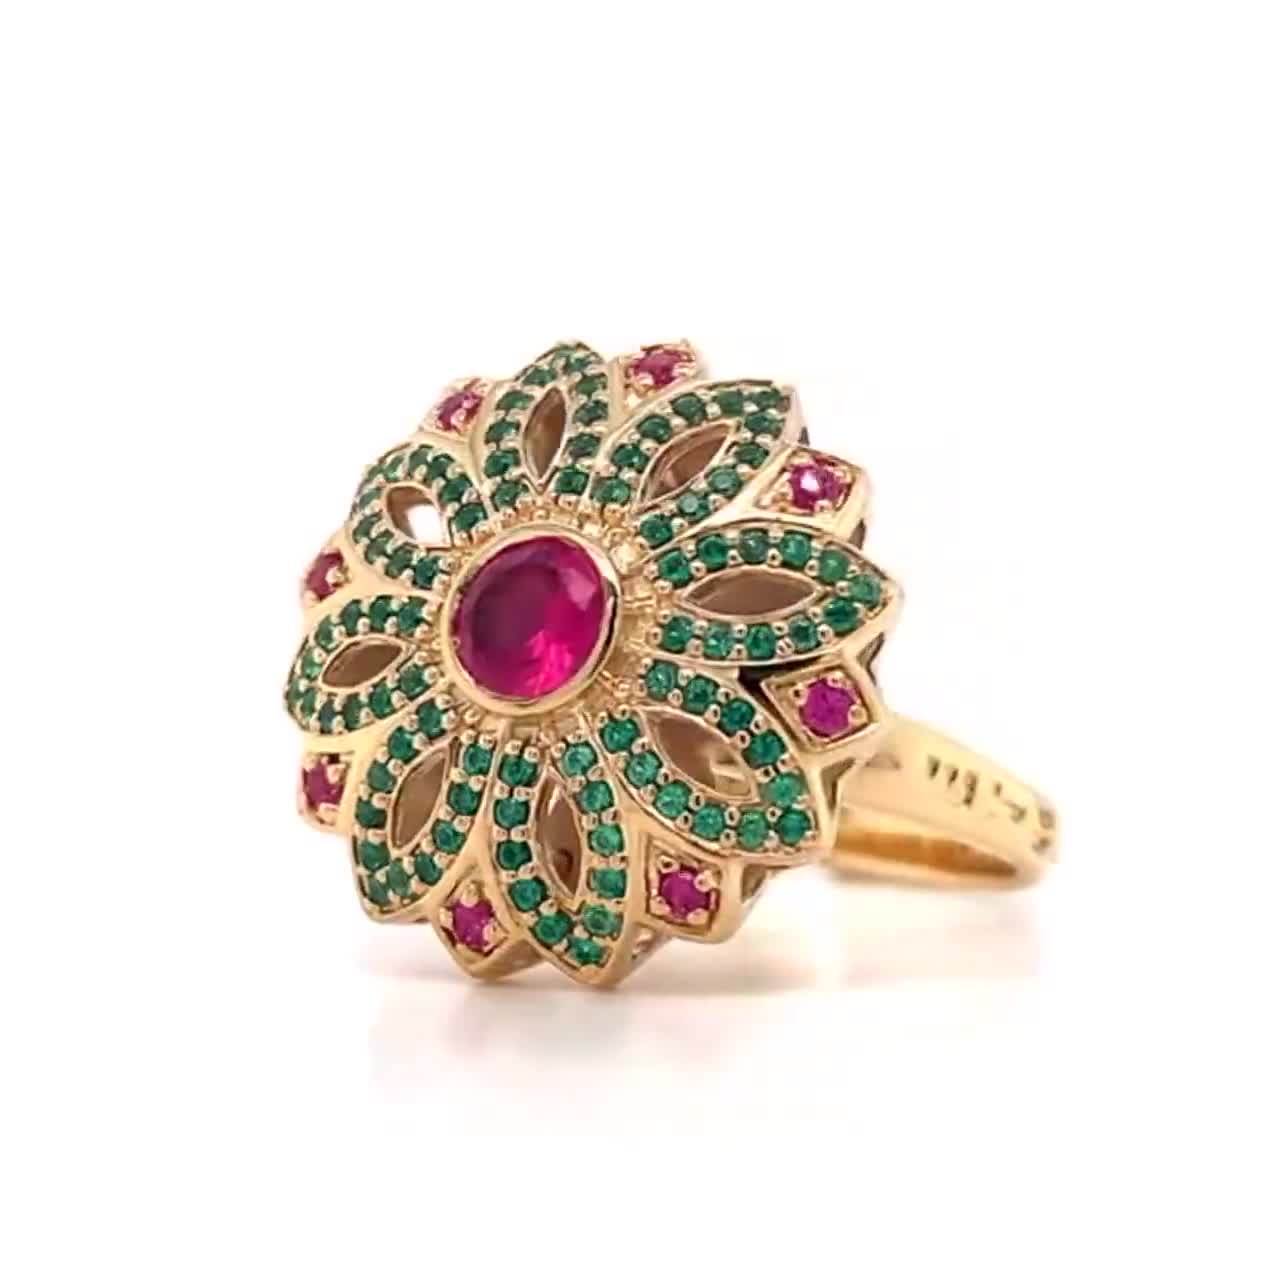 แหวนแฟชั่น-ethniq-ฝังพลอยนาโนนำเข้า-สีเขียวมรกต-แดงทับทิม-ชุบทองสีเหลือง-yellow-gold